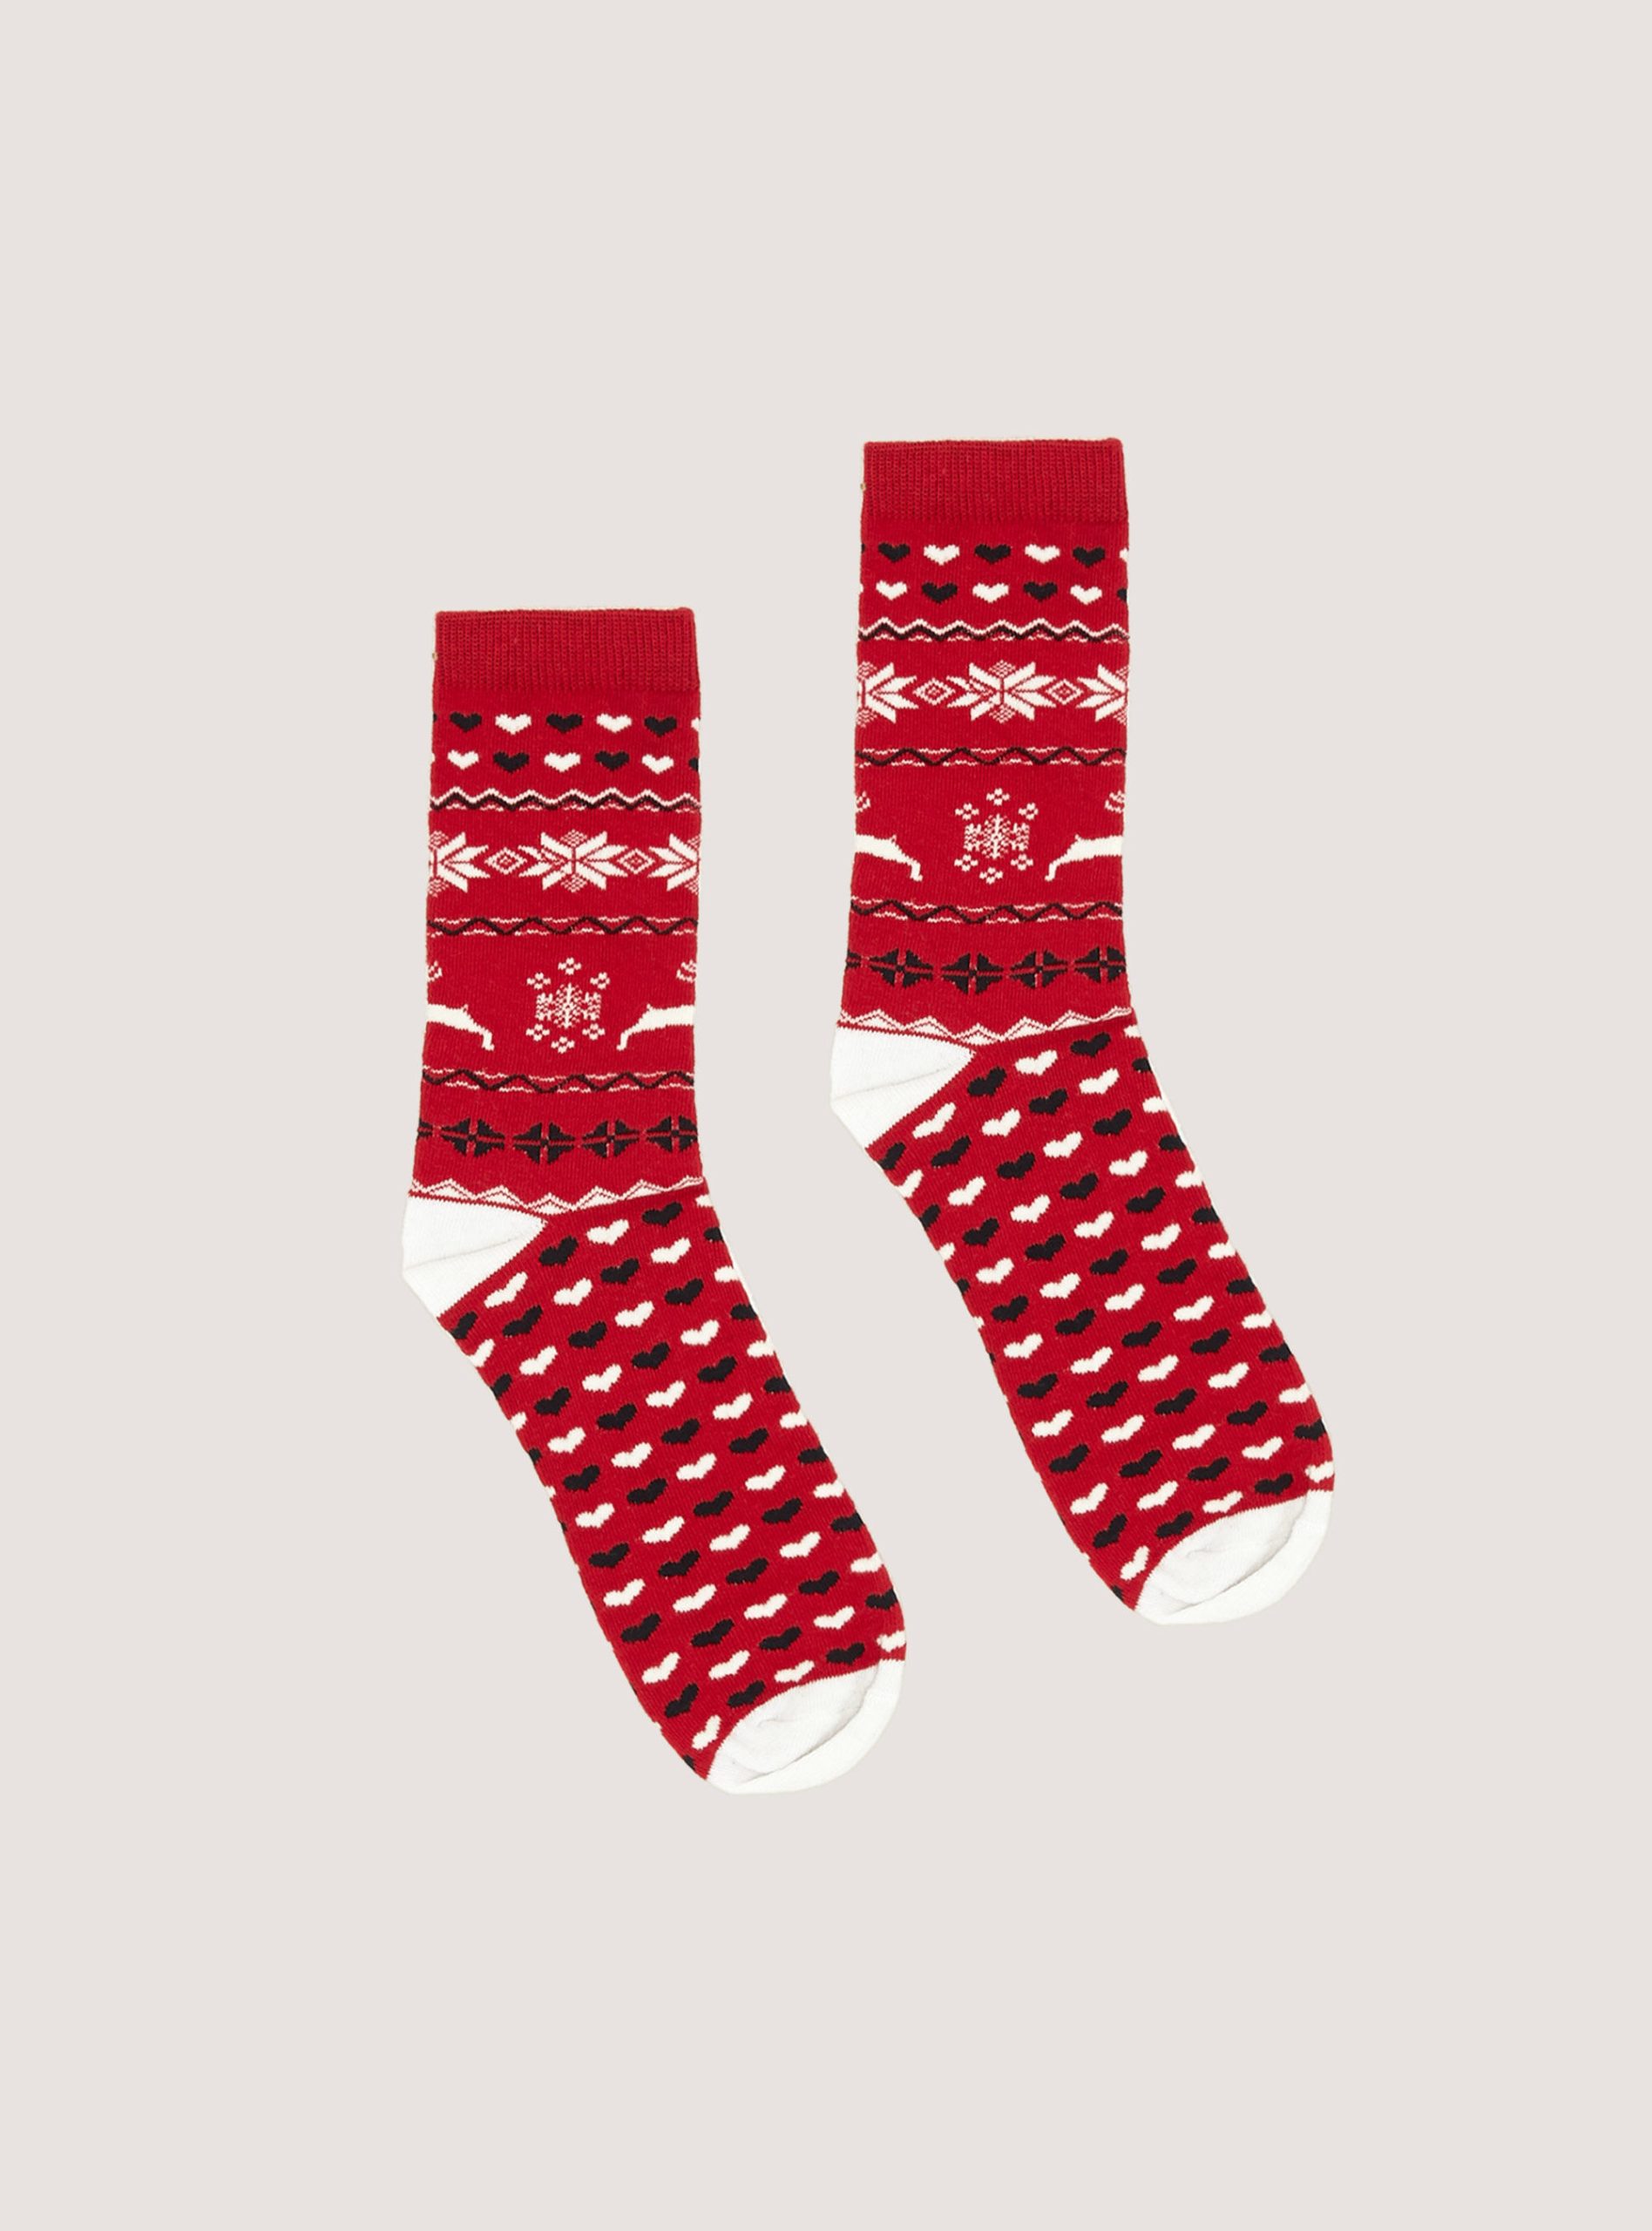 Frauen Alcott Socken Xmas Set Of 2 Pairs Of Christmas Socks Produktstandard – 2